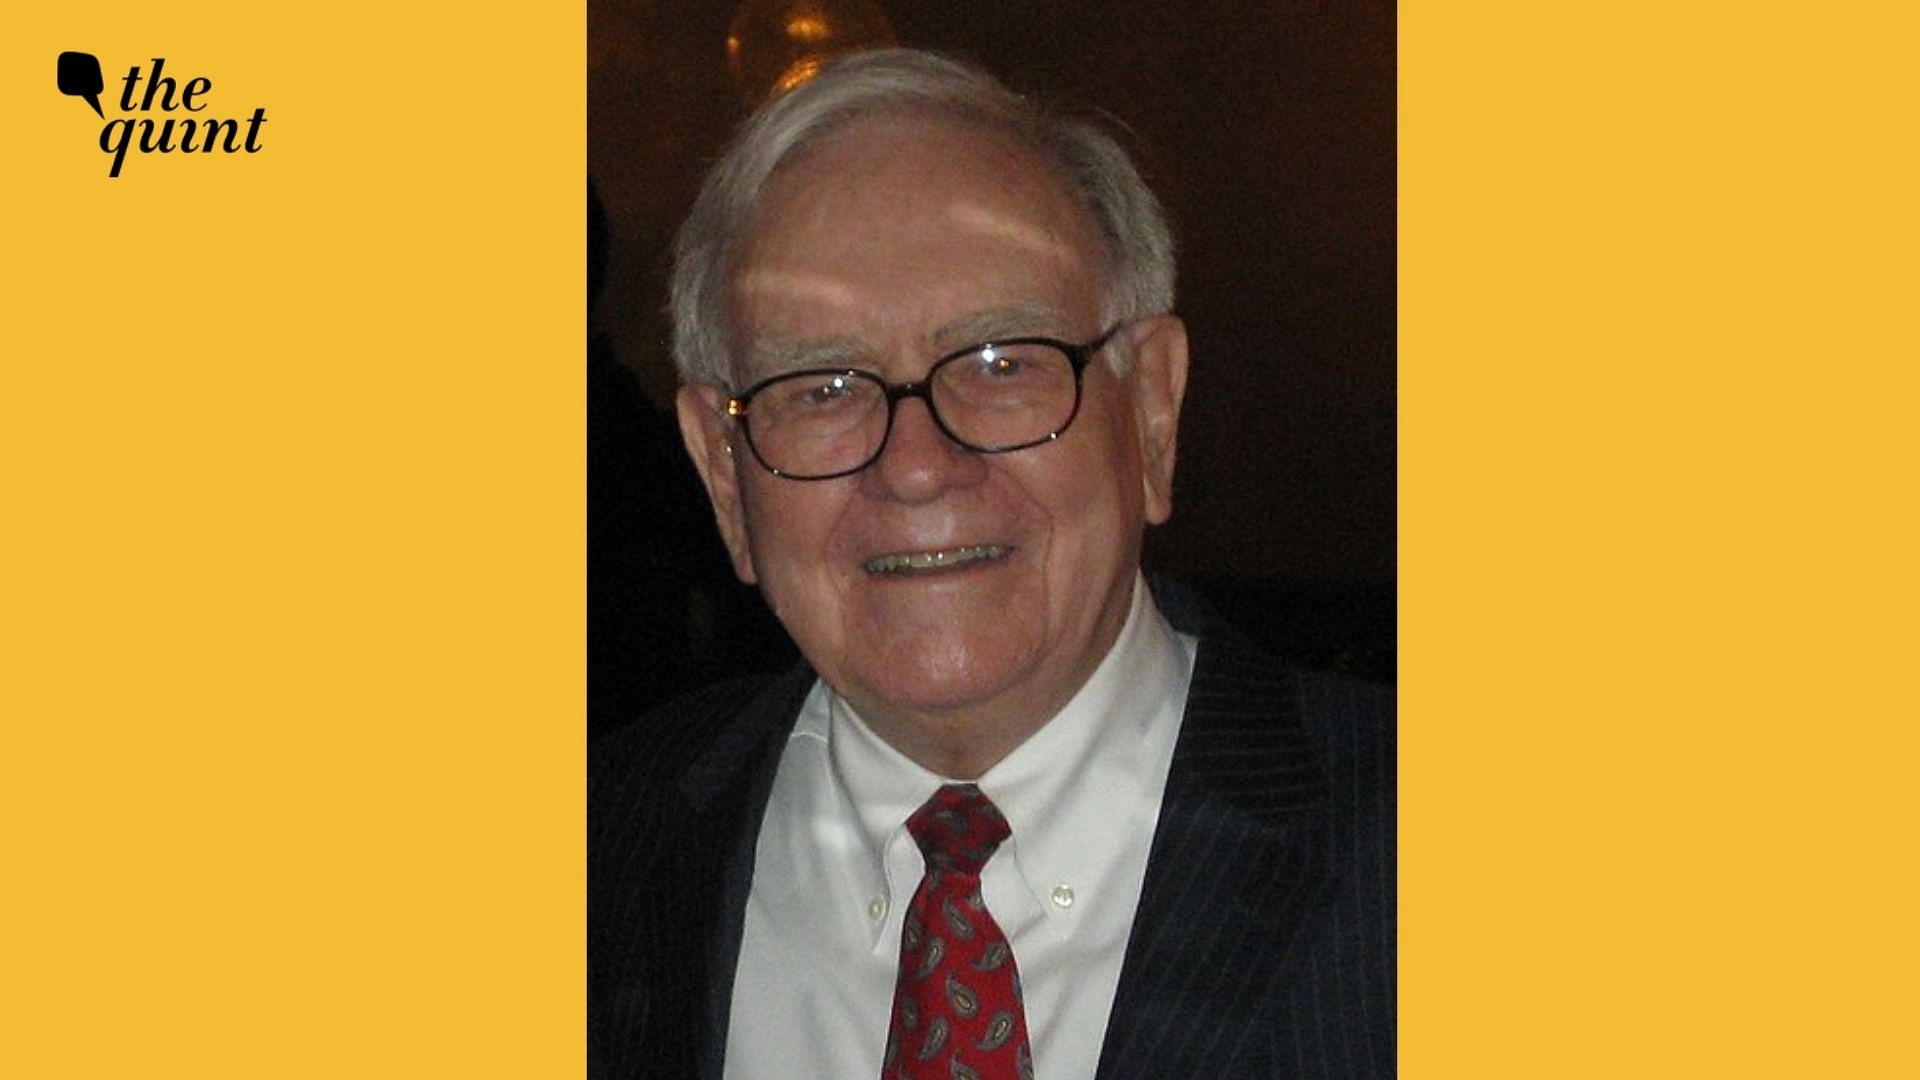 File photo of Warren Buffett.